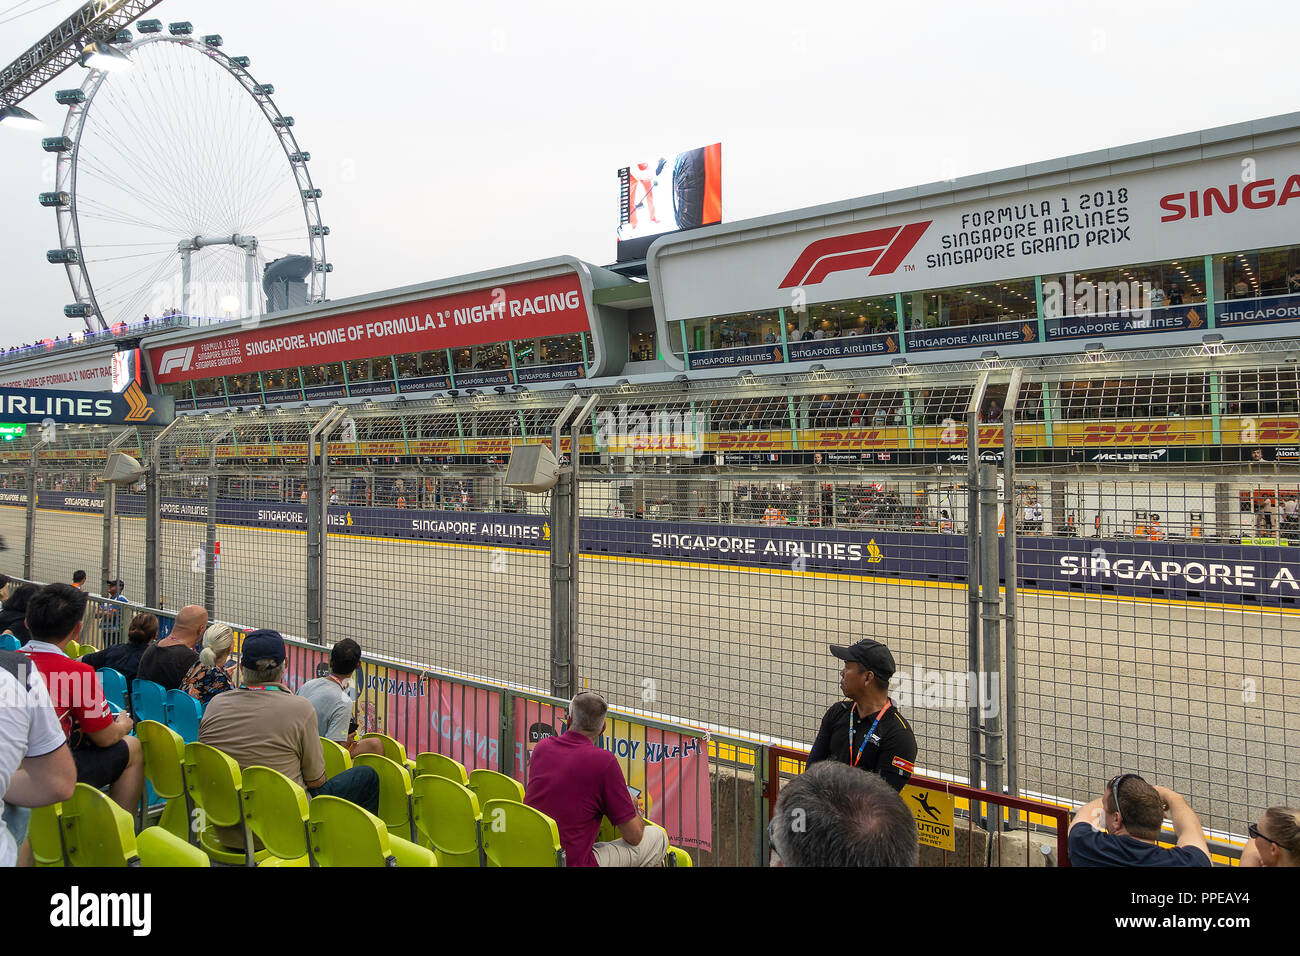 Das große Rad genannt Singapore Flyer zusammen mit Pit Grandstand bei Formel 1 Grand Prix 2018 in Singapur Republik Singapur Asien Stockfoto